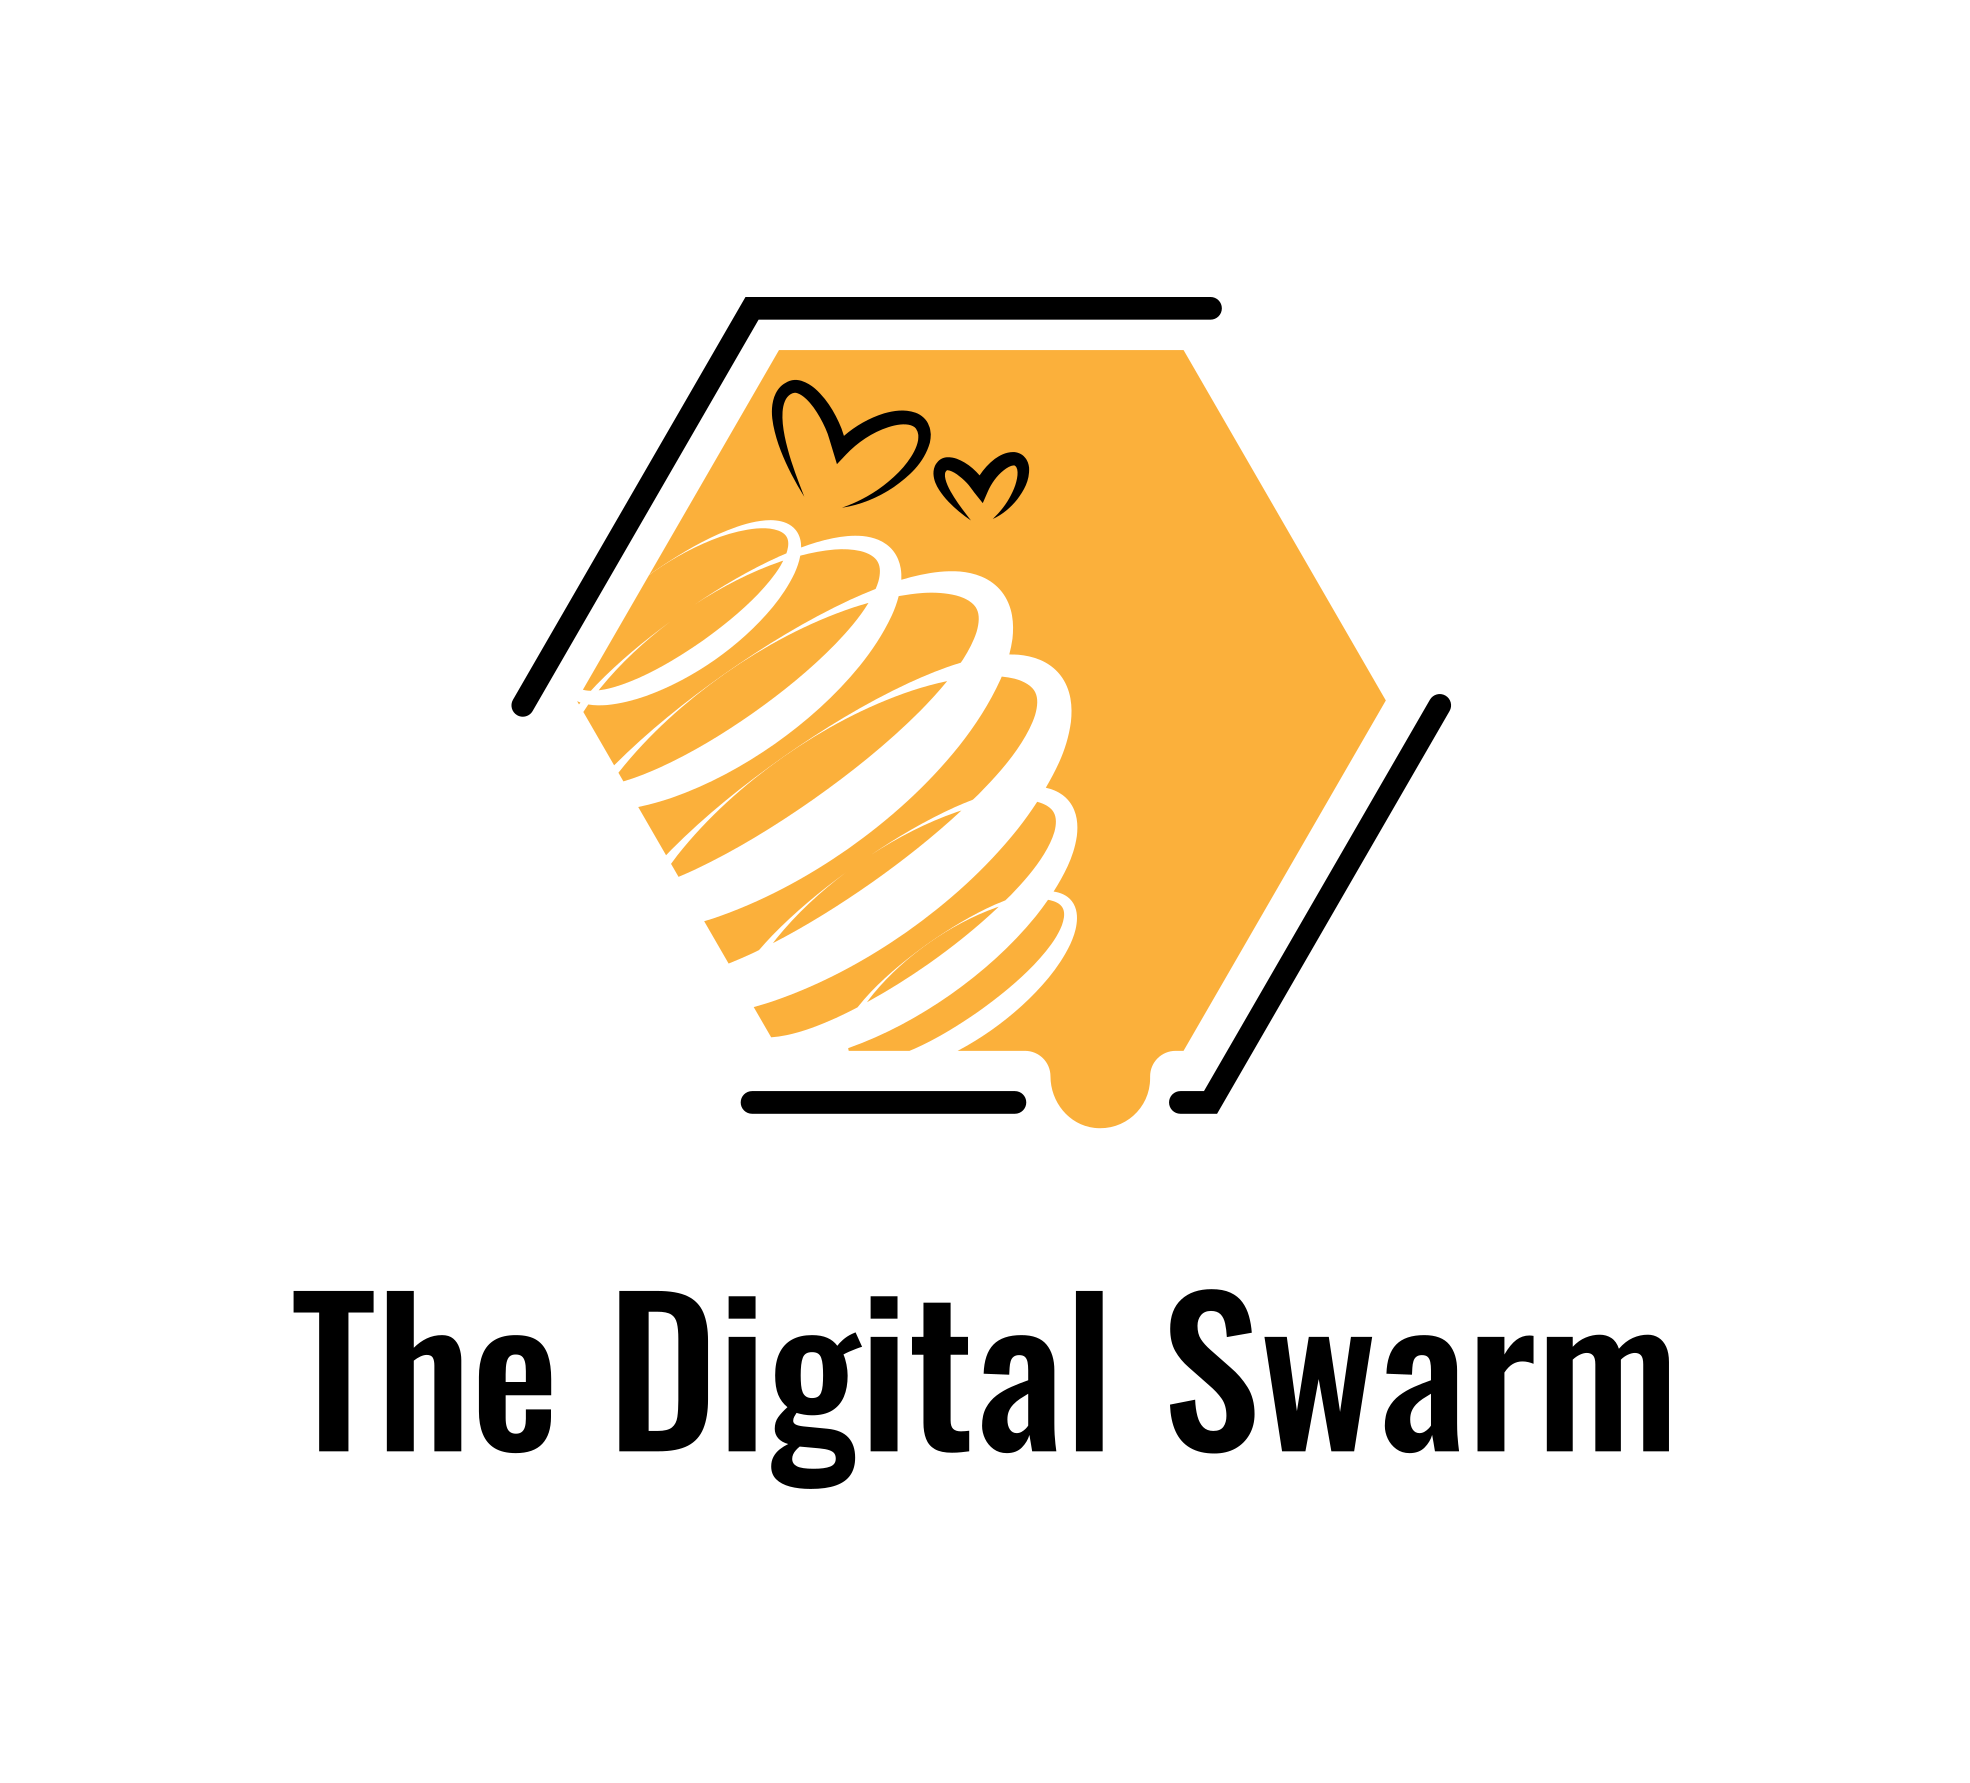 The Digital Swarm